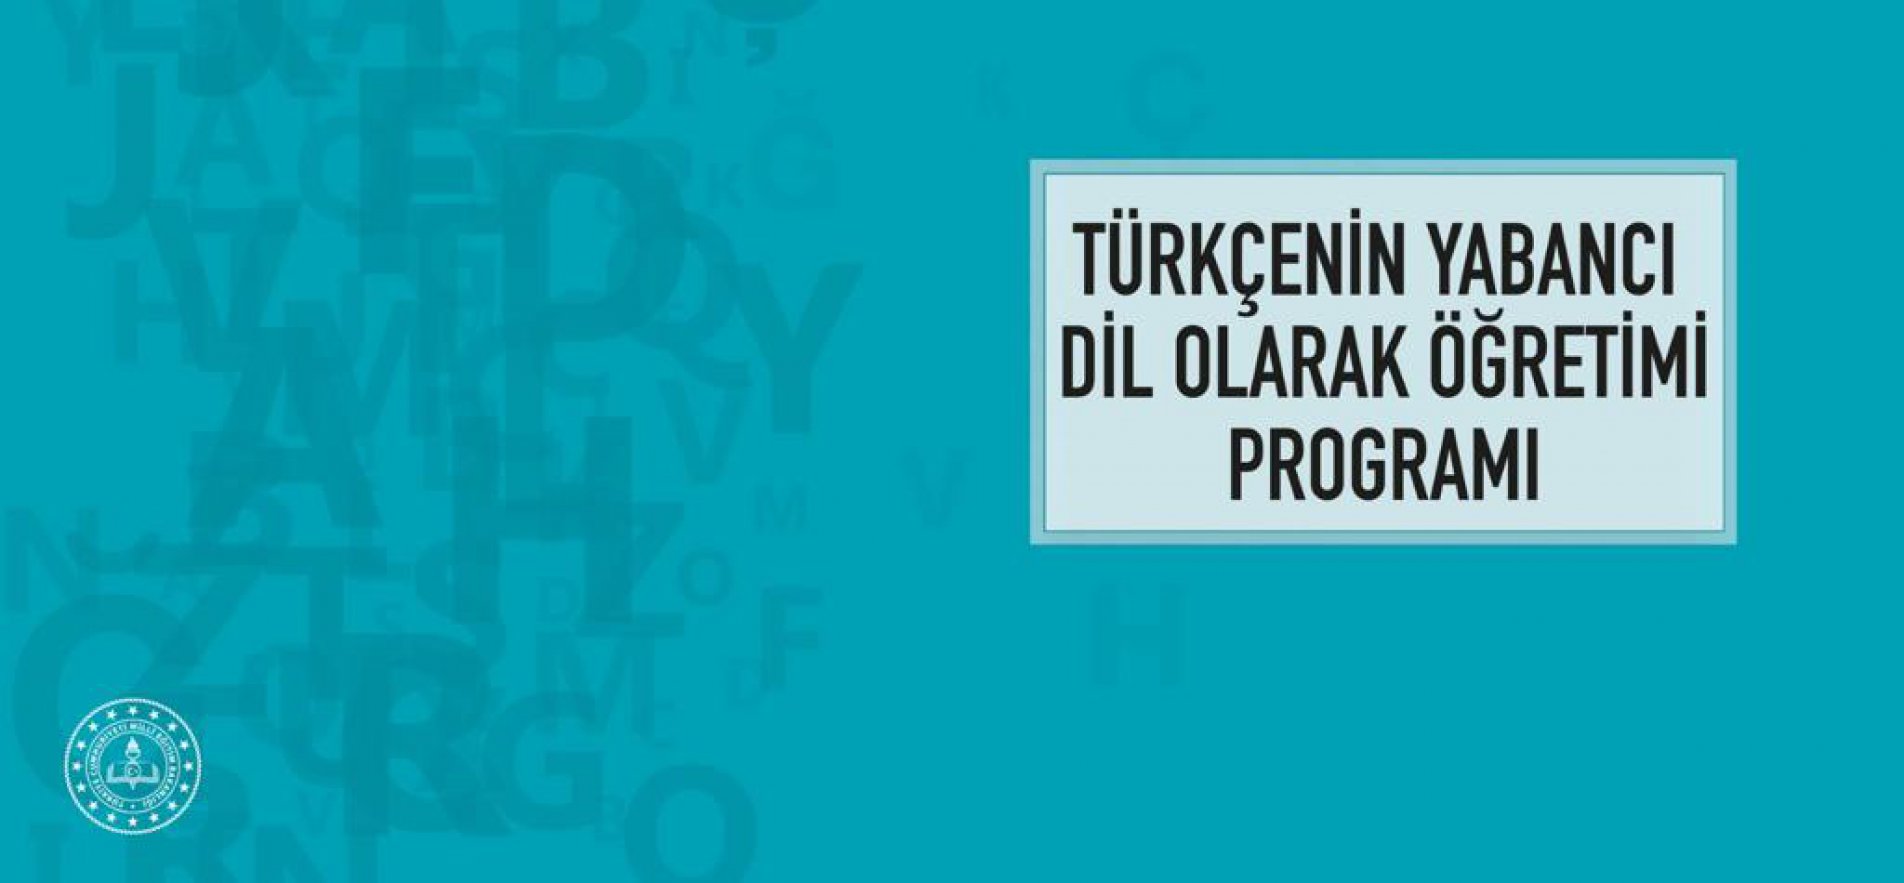 Yabancı Dil Olarak Öğretiminde "Türkçe" Seferberliği